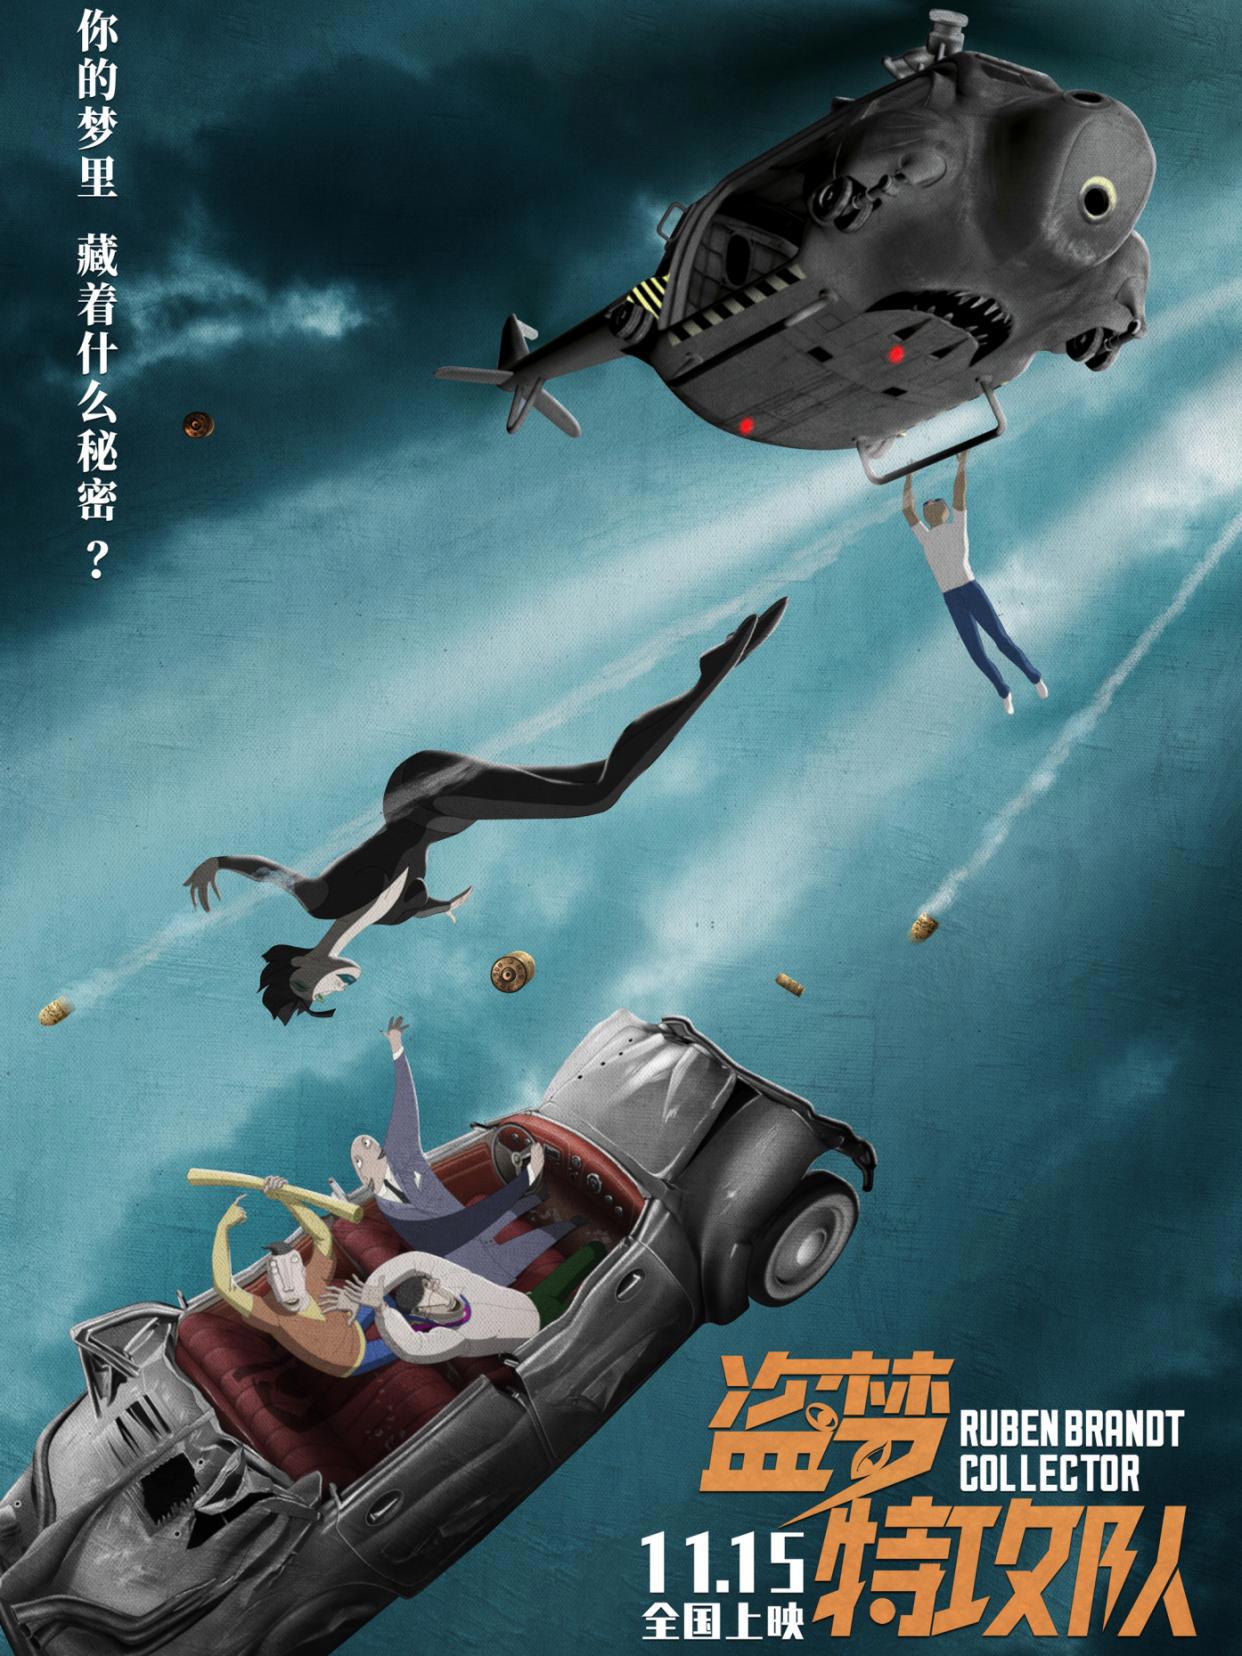 《盗梦特攻队》新版海报揭露更多细节将于11.15上映